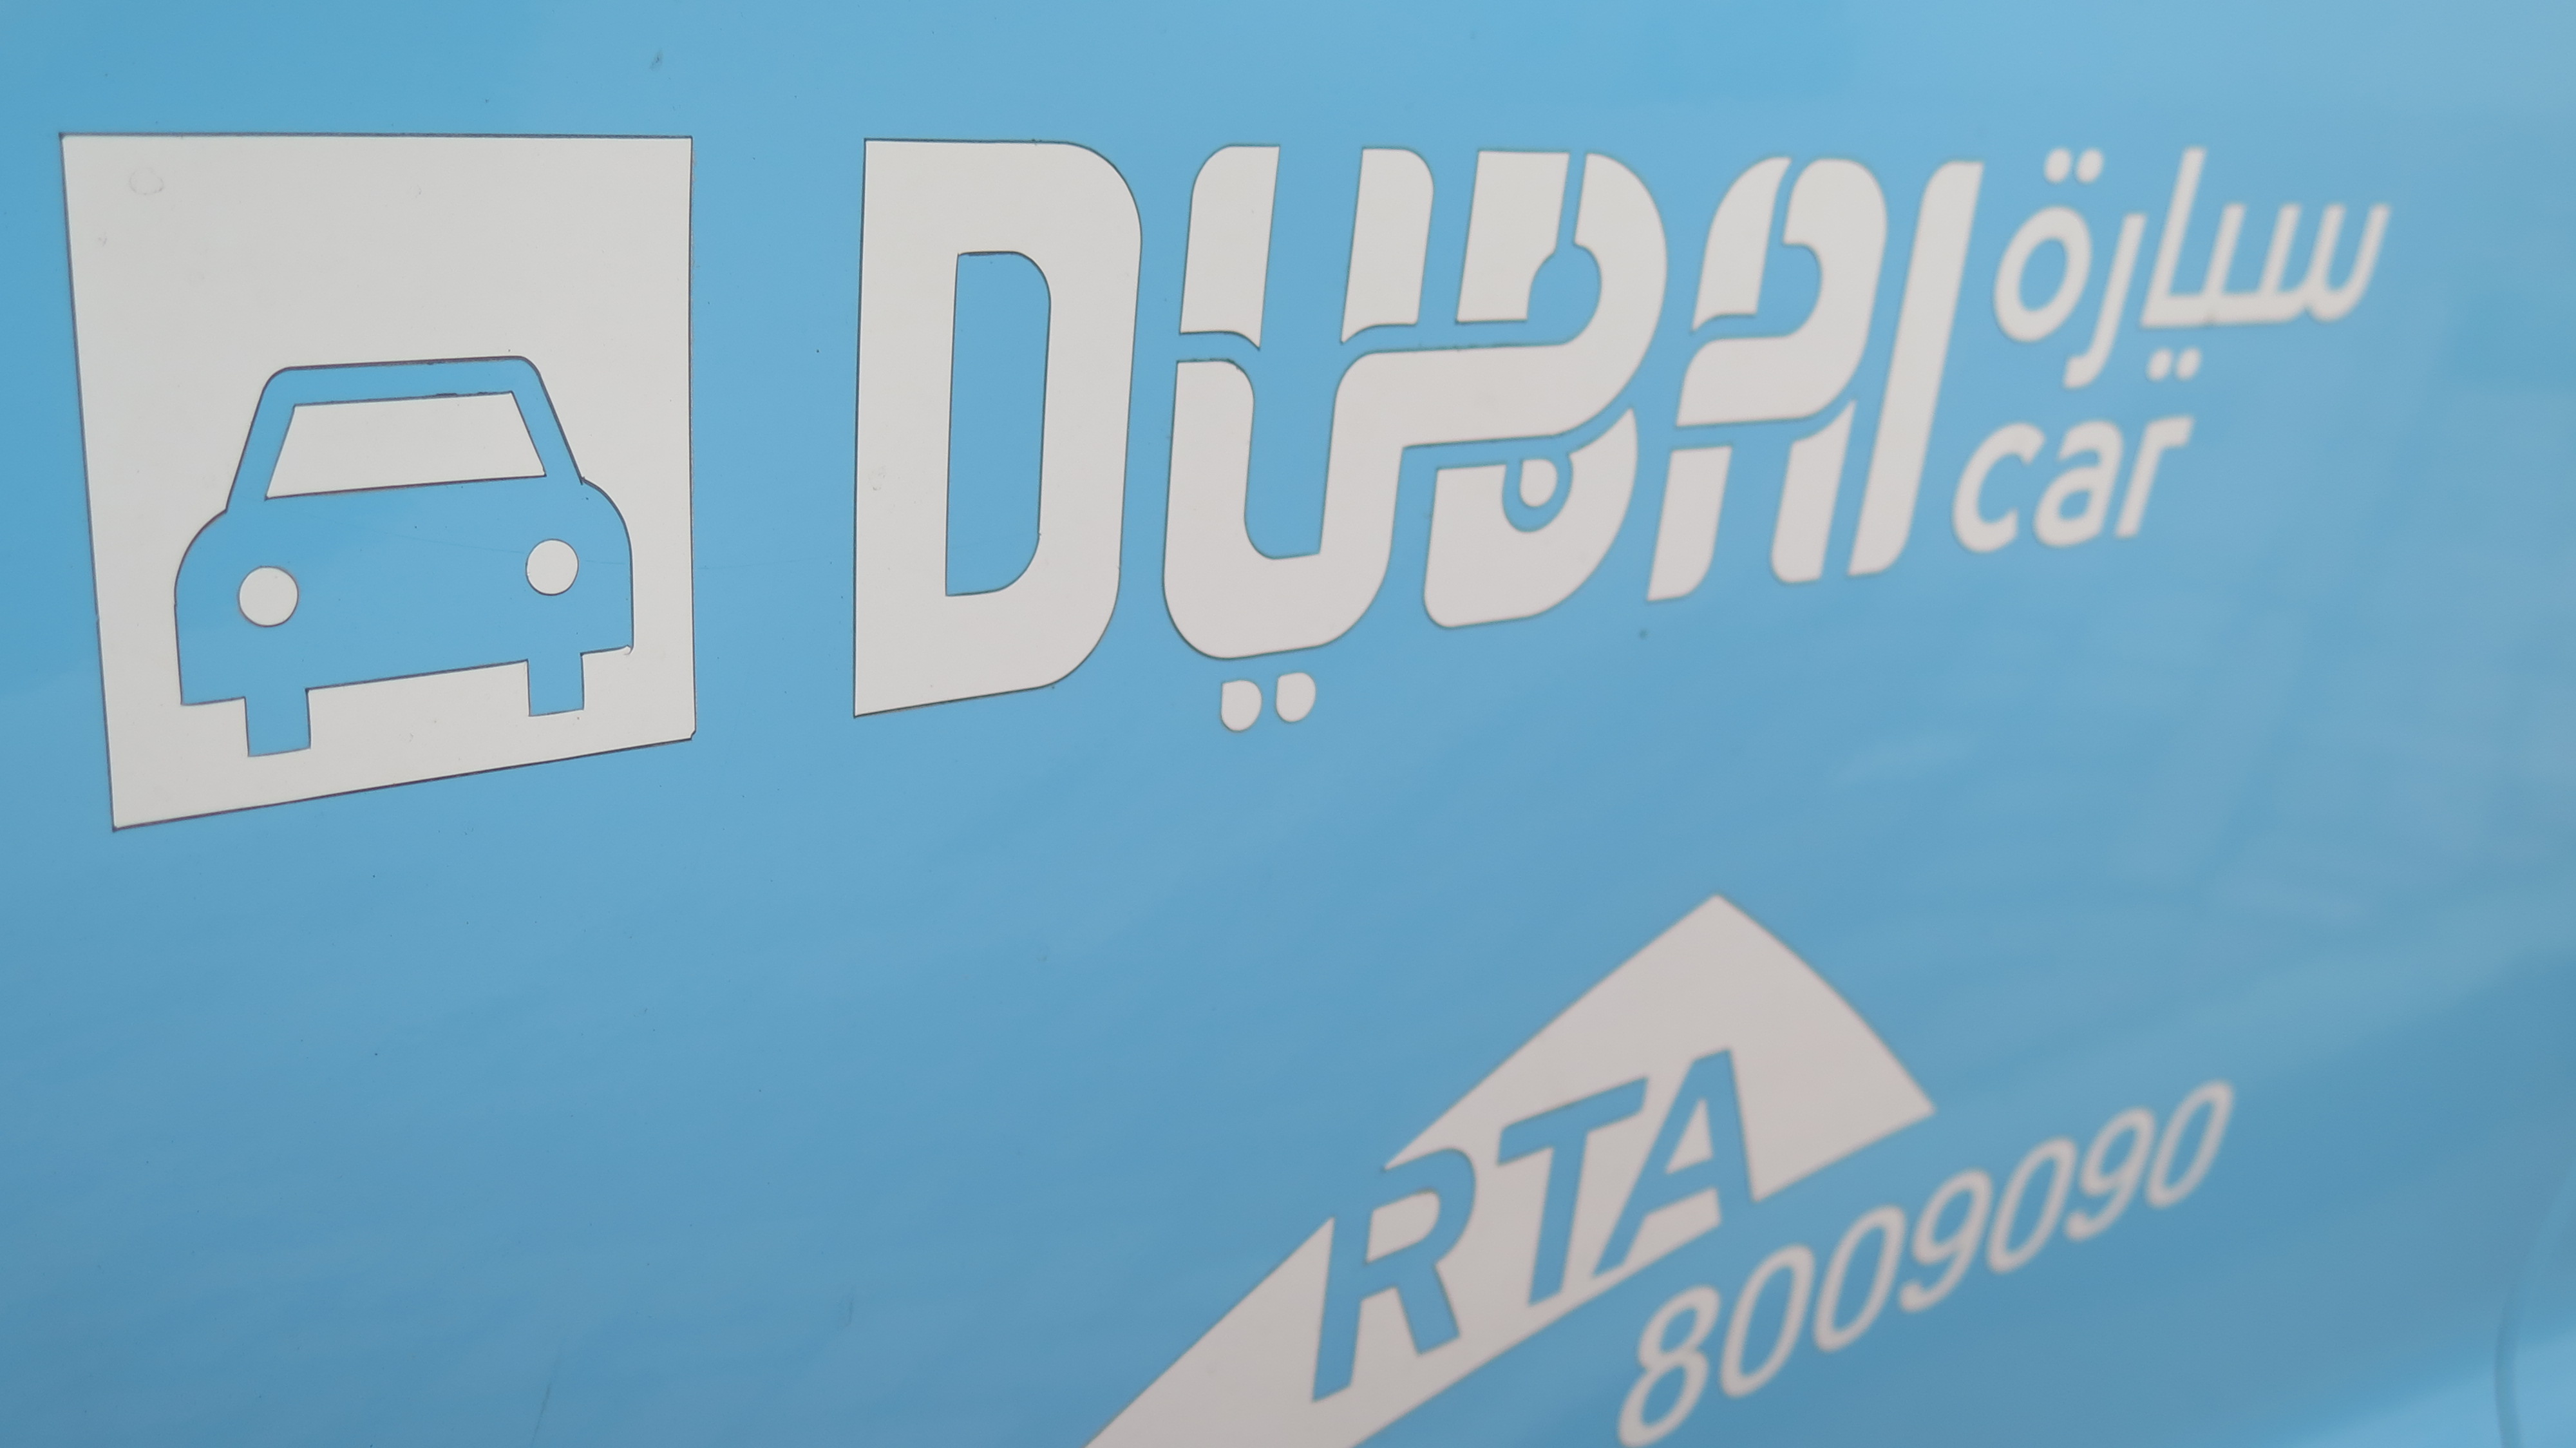 Dubai RTA sign - Dec 2019